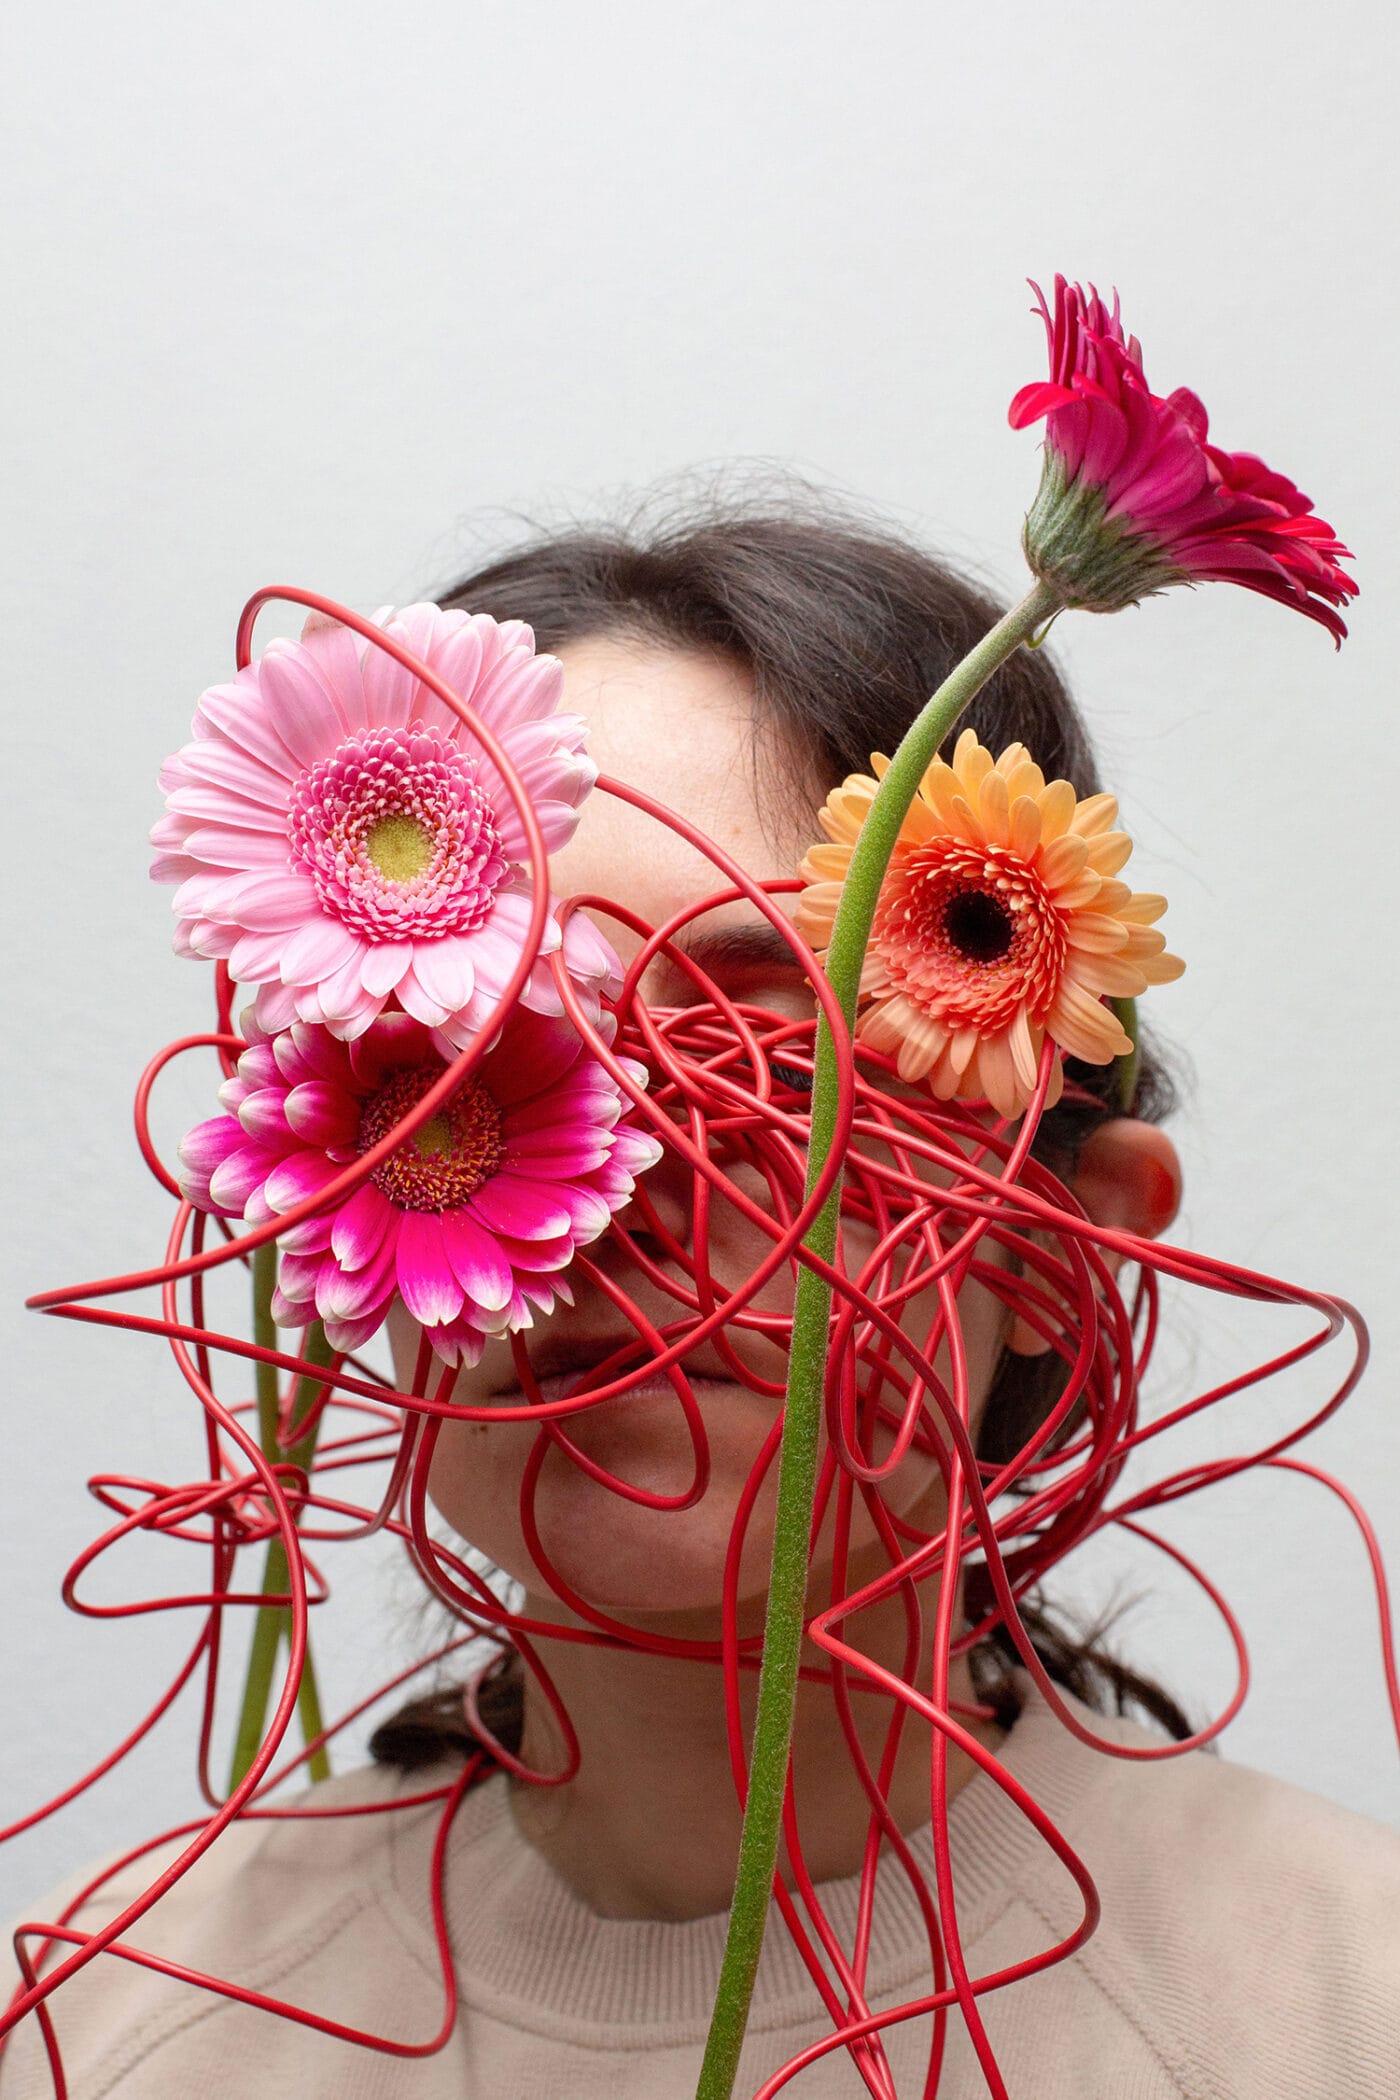 Rötliche Plastikblumen sind verknäuelt vor dem Gesicht einer jungen Frau platziert, symbolisch für die Unruhe im Kopf.